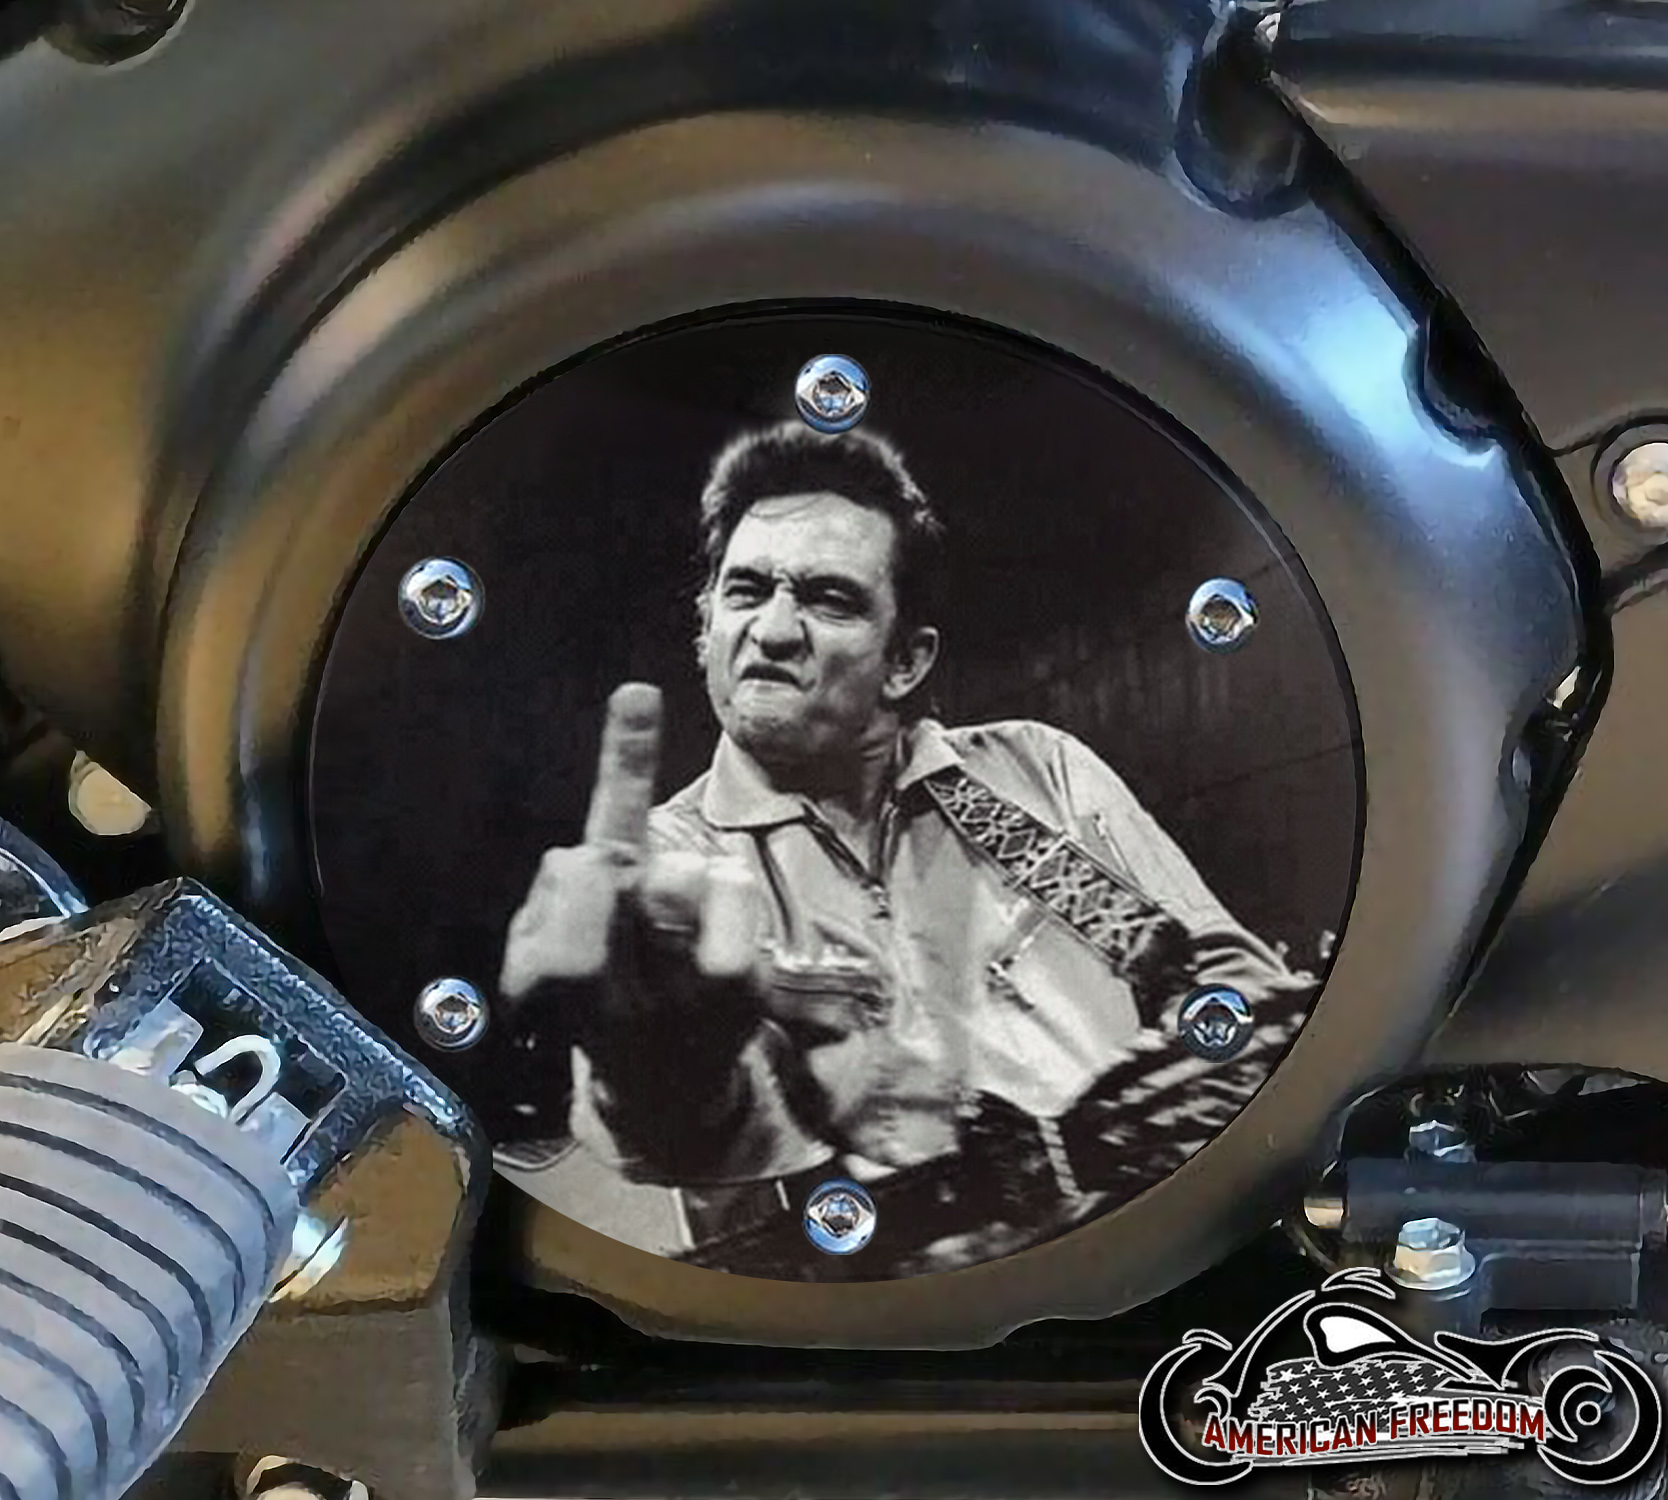 SUZUKI M109R Derby/Engine Cover - Johnny Cash